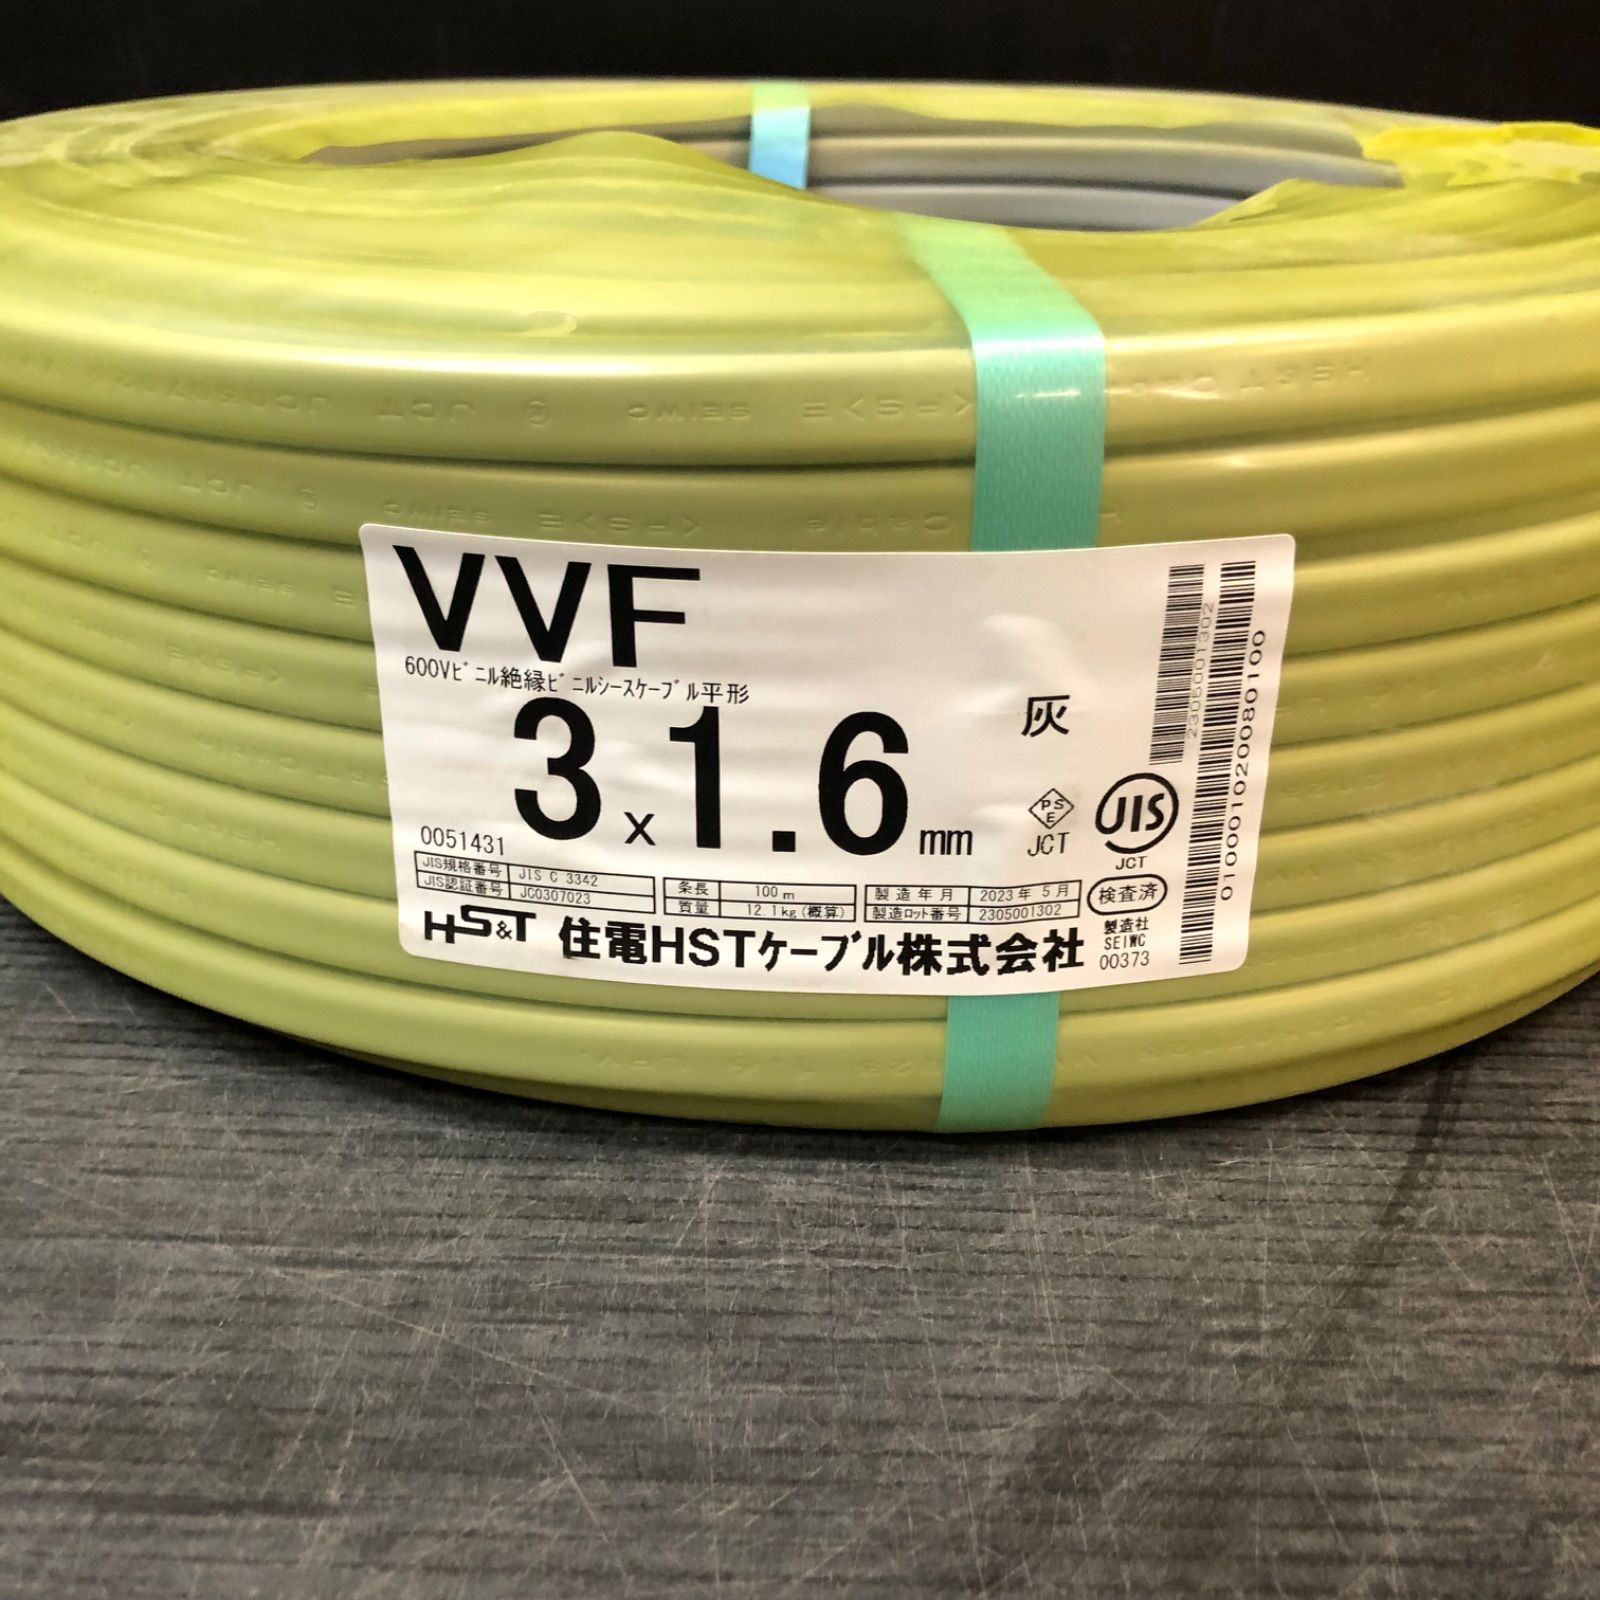 XH316N》住電HSTケーブル株式会社 VVF3×1.6mm 600Vビニルシース